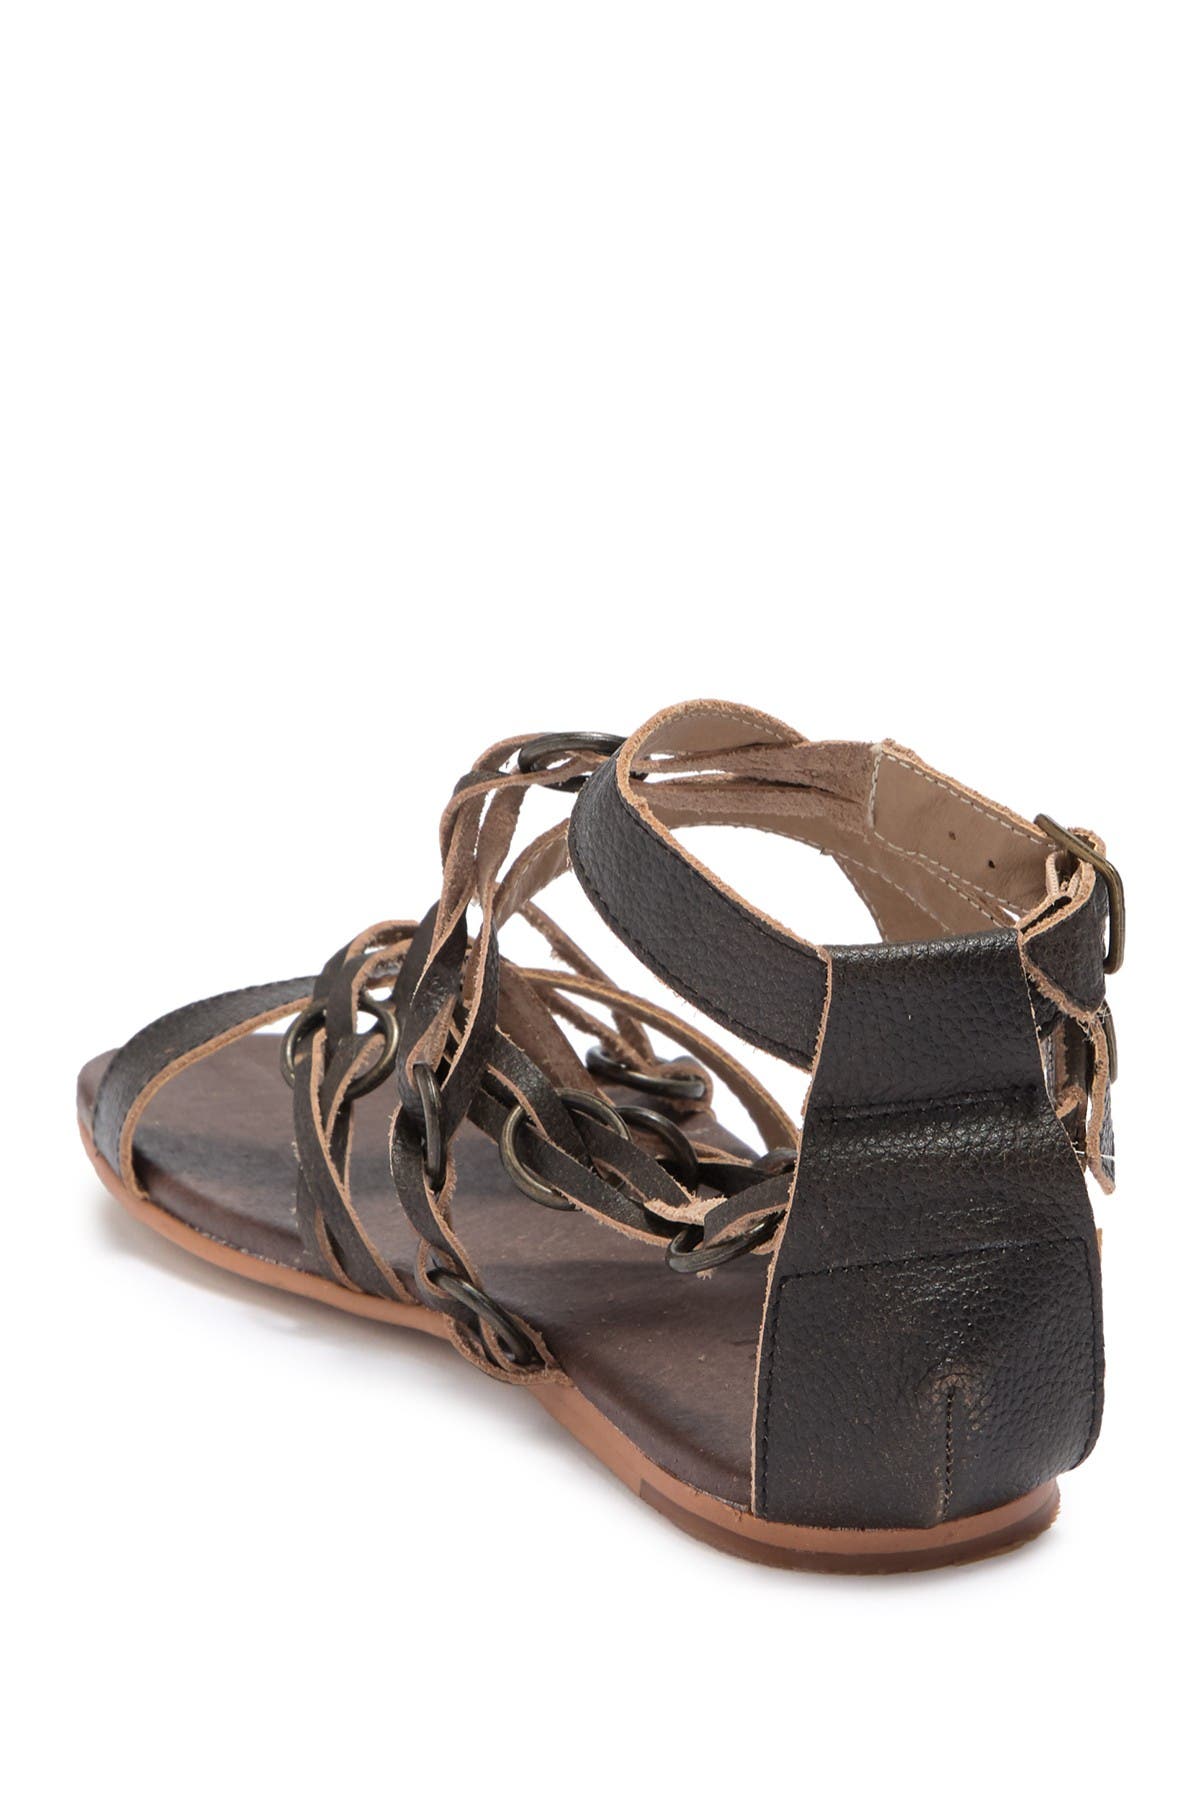 roan gretch sandal